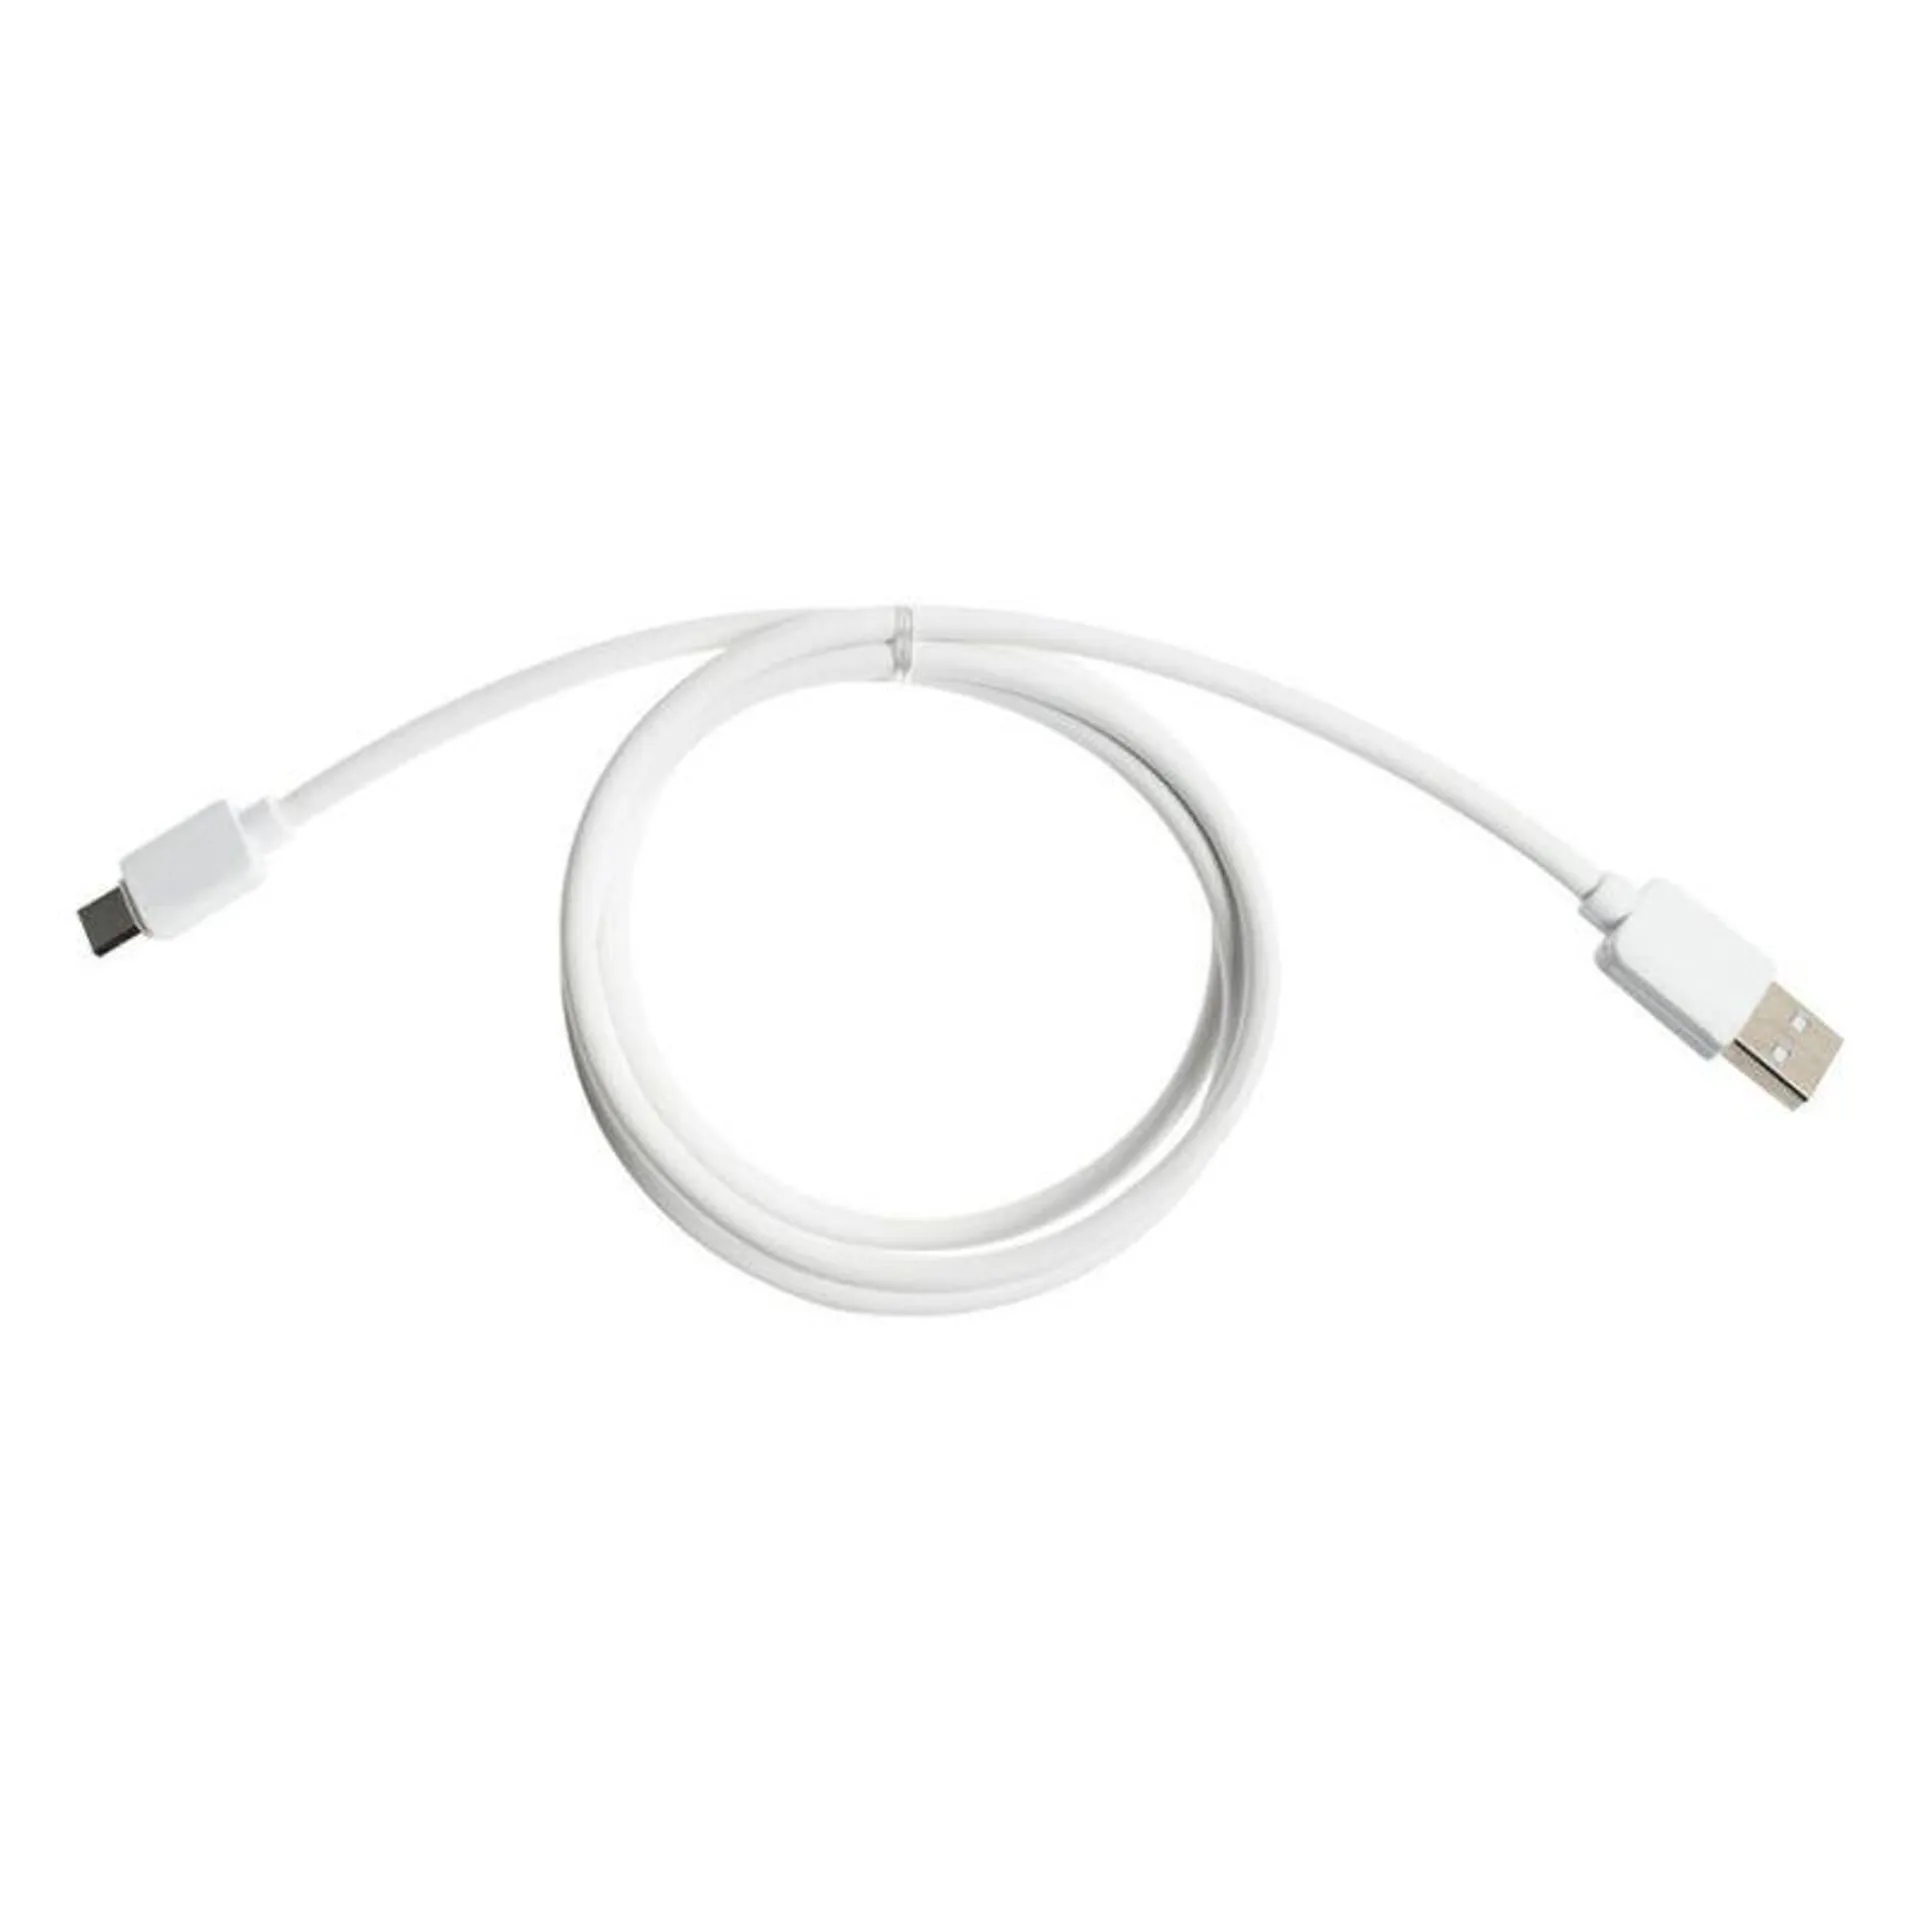 Cable Cargador USB-C Simplicity Blanco